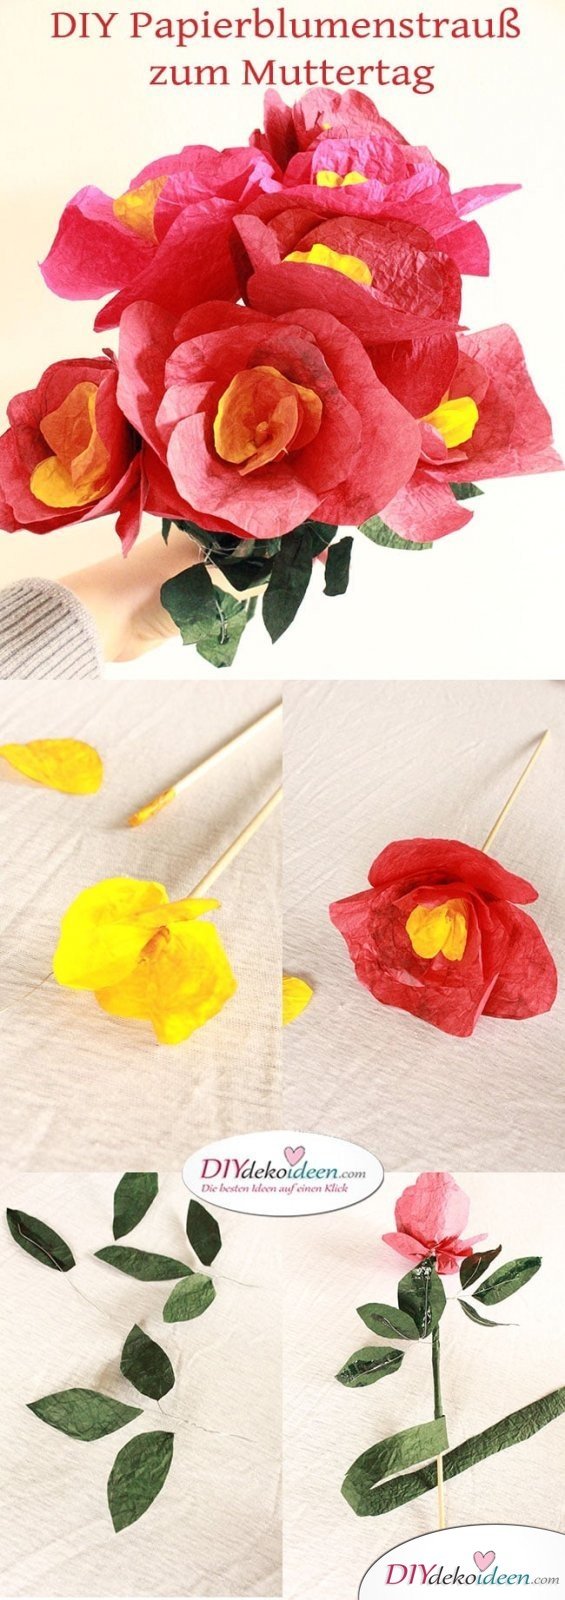 Geschenke zum Muttertag selber machen - DIY Papierblumenstrrauß 